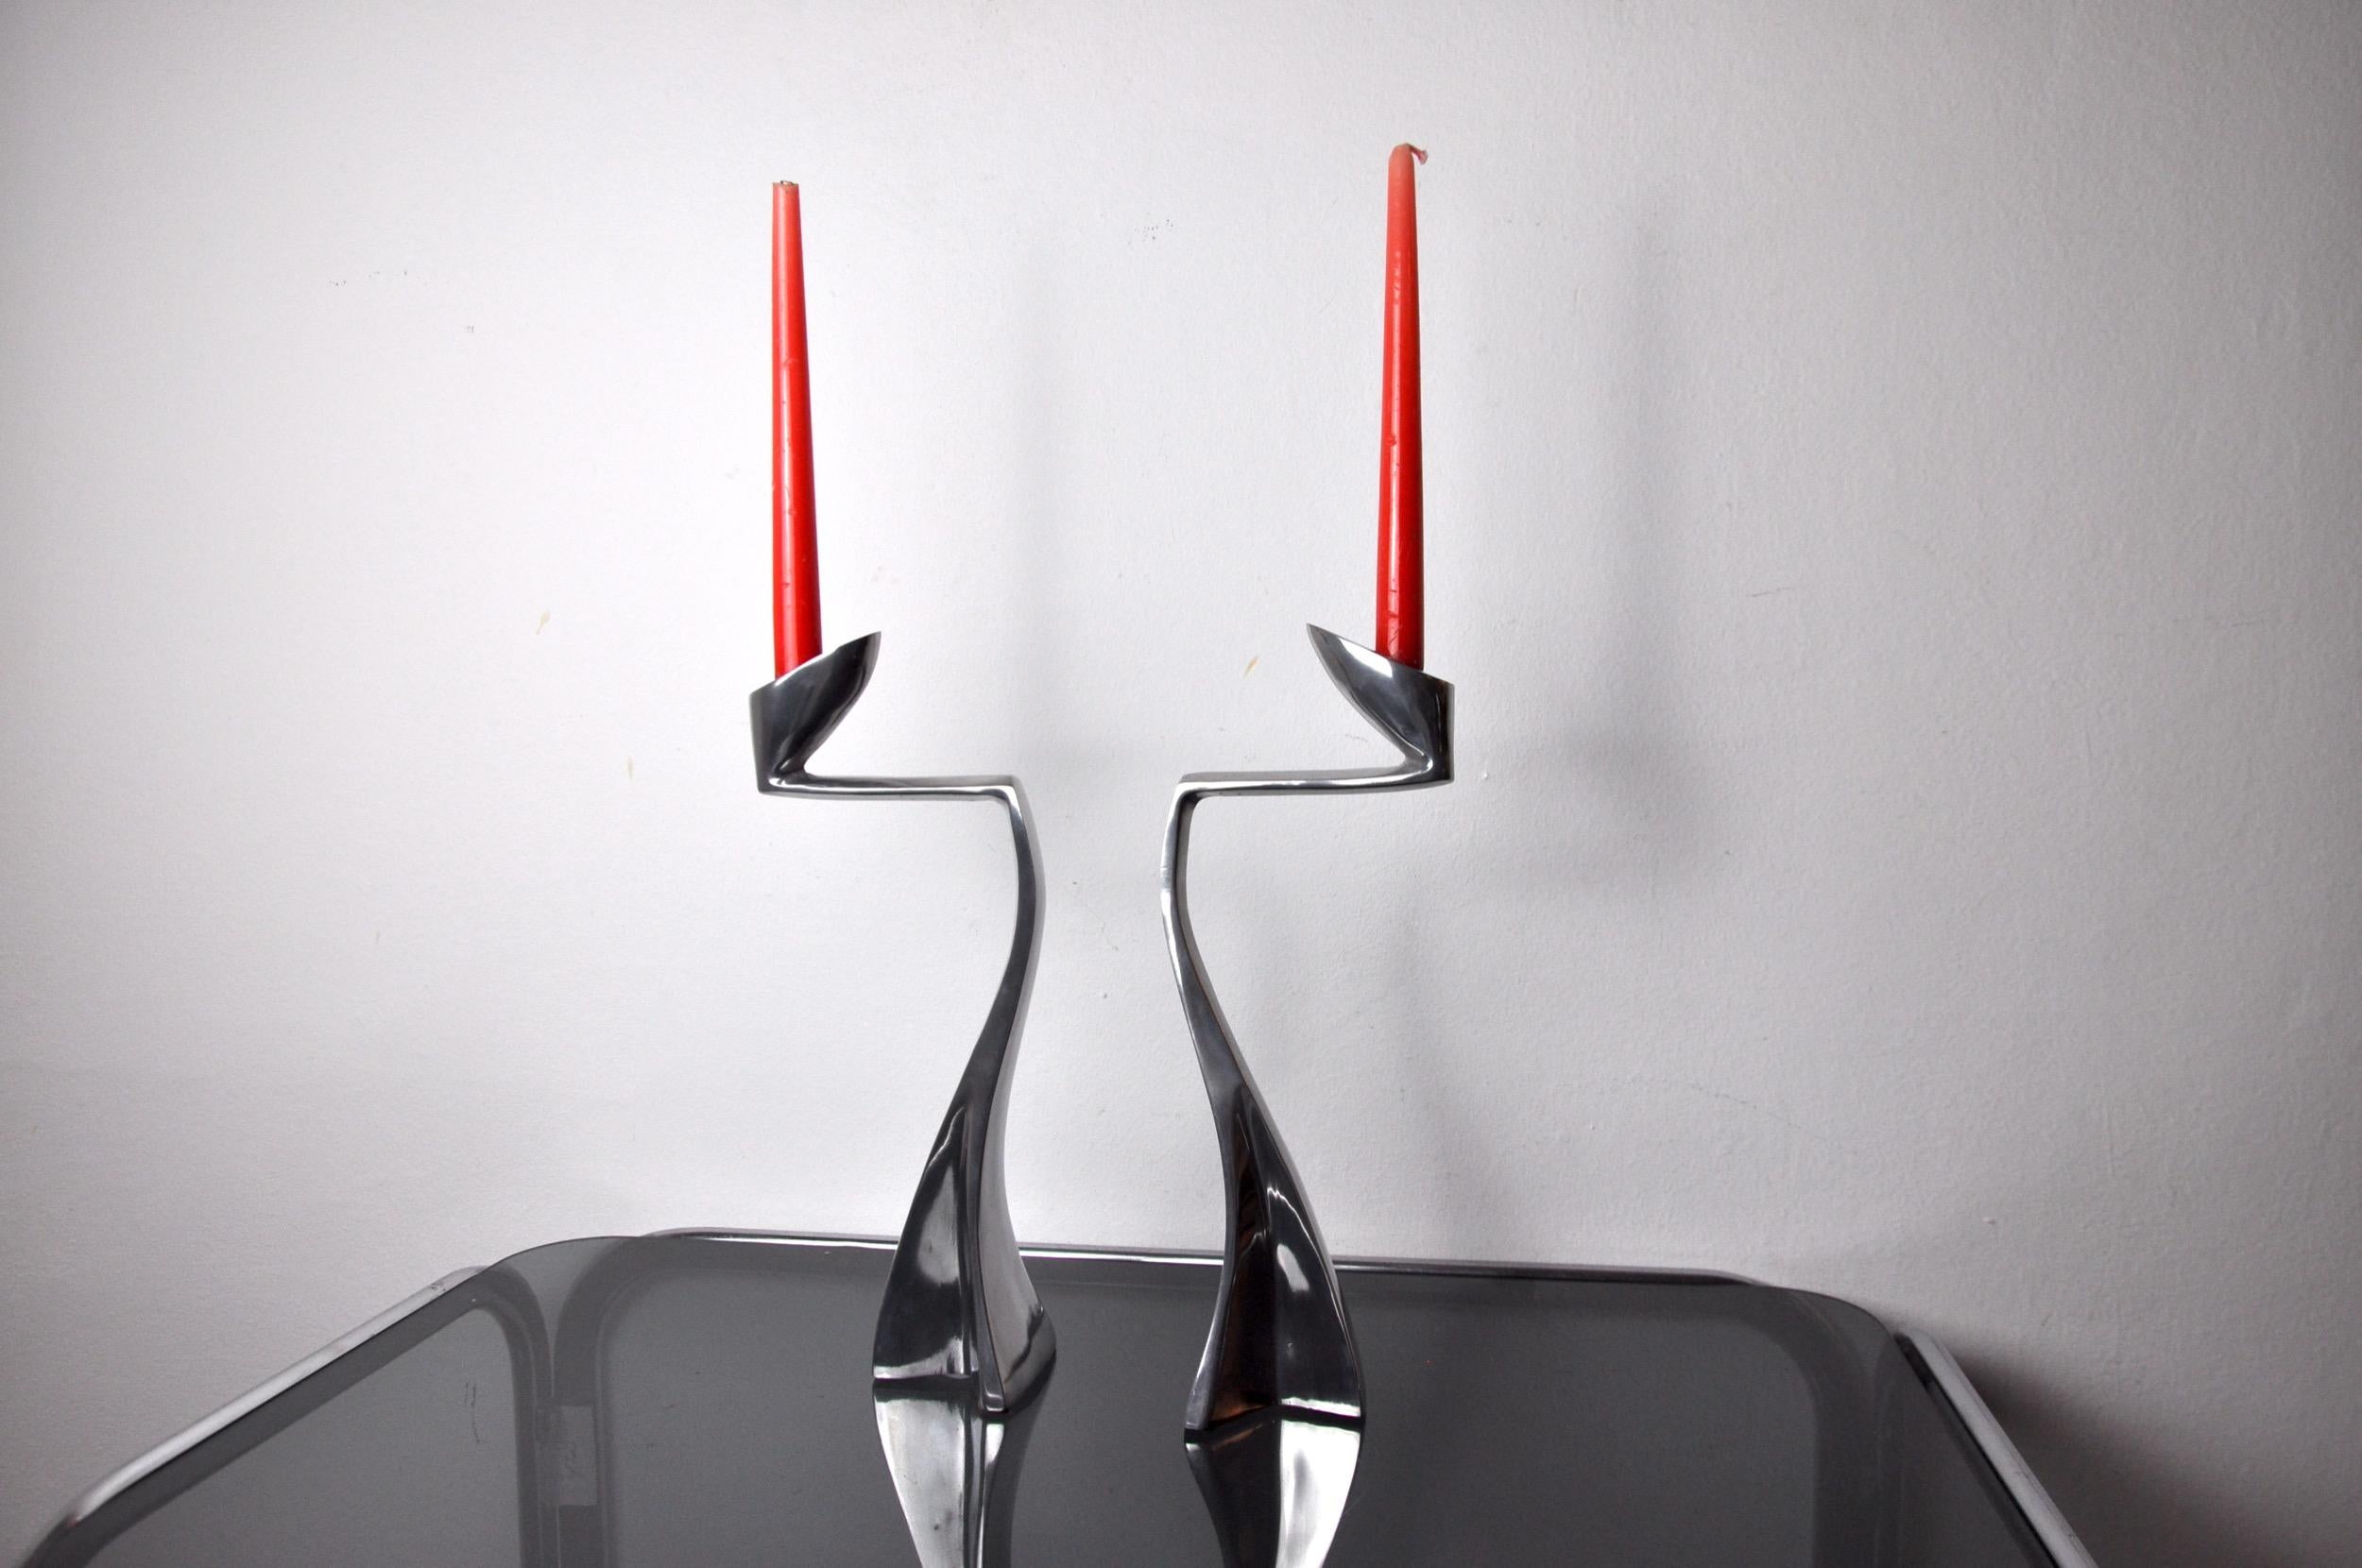 Ein Paar schwimmende Kerzenhalter, entworfen und hergestellt von Matthew Hilton für SCP England in England in den 1980er Jahren.

Satz von zwei brutalistisch geformten Aluminium-Kerzenhaltern, die an die Form von Schwänen erinnern.

Wunderschöne